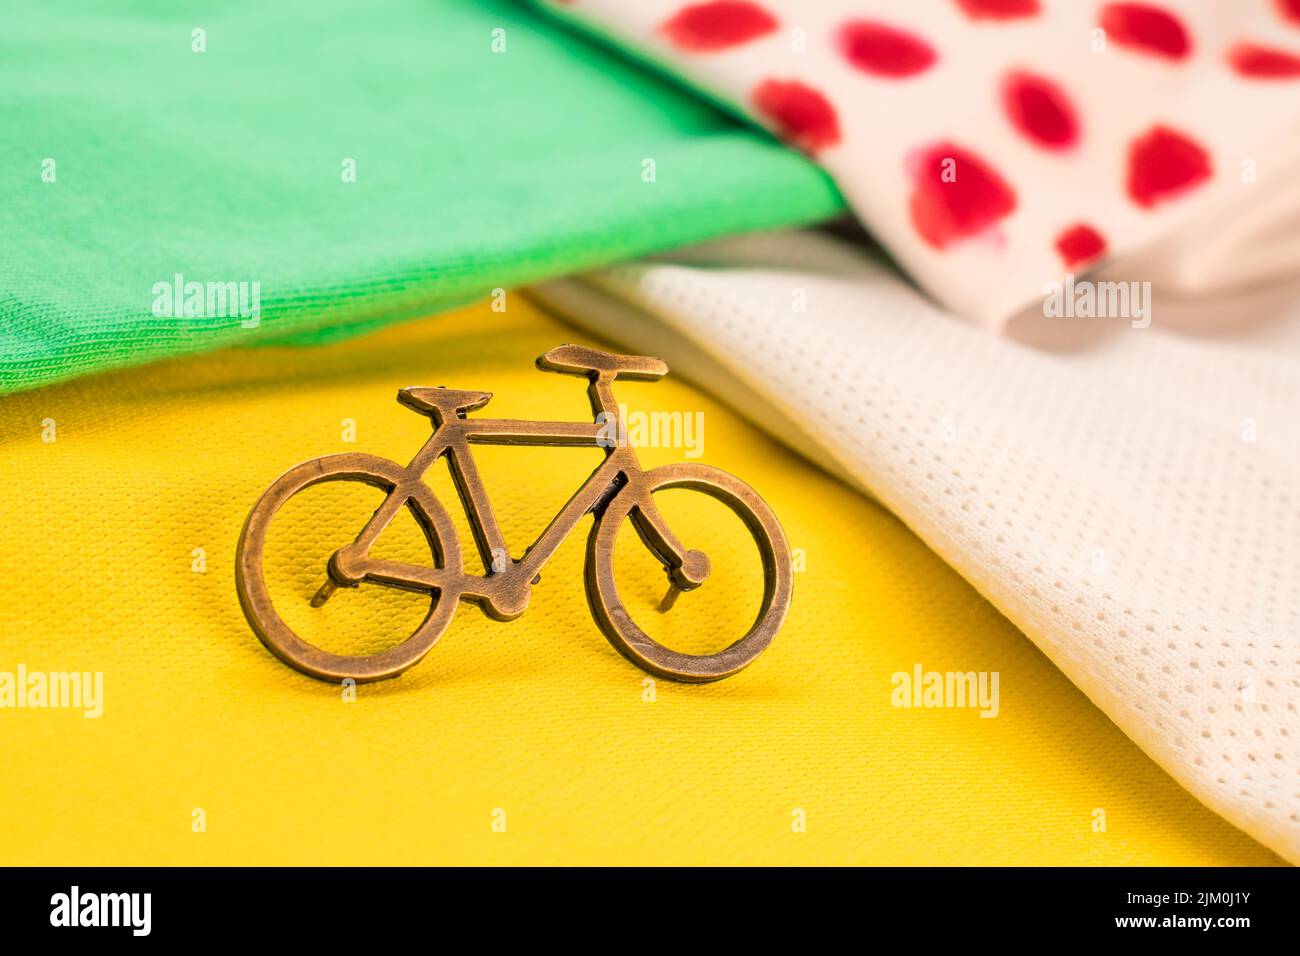 Eine kleine Fahrradnadel auf einem gelben, grünen und weißen T-Shirt für eine Tour durch Frankreich mit verschwommenem Hintergrund Stockfoto